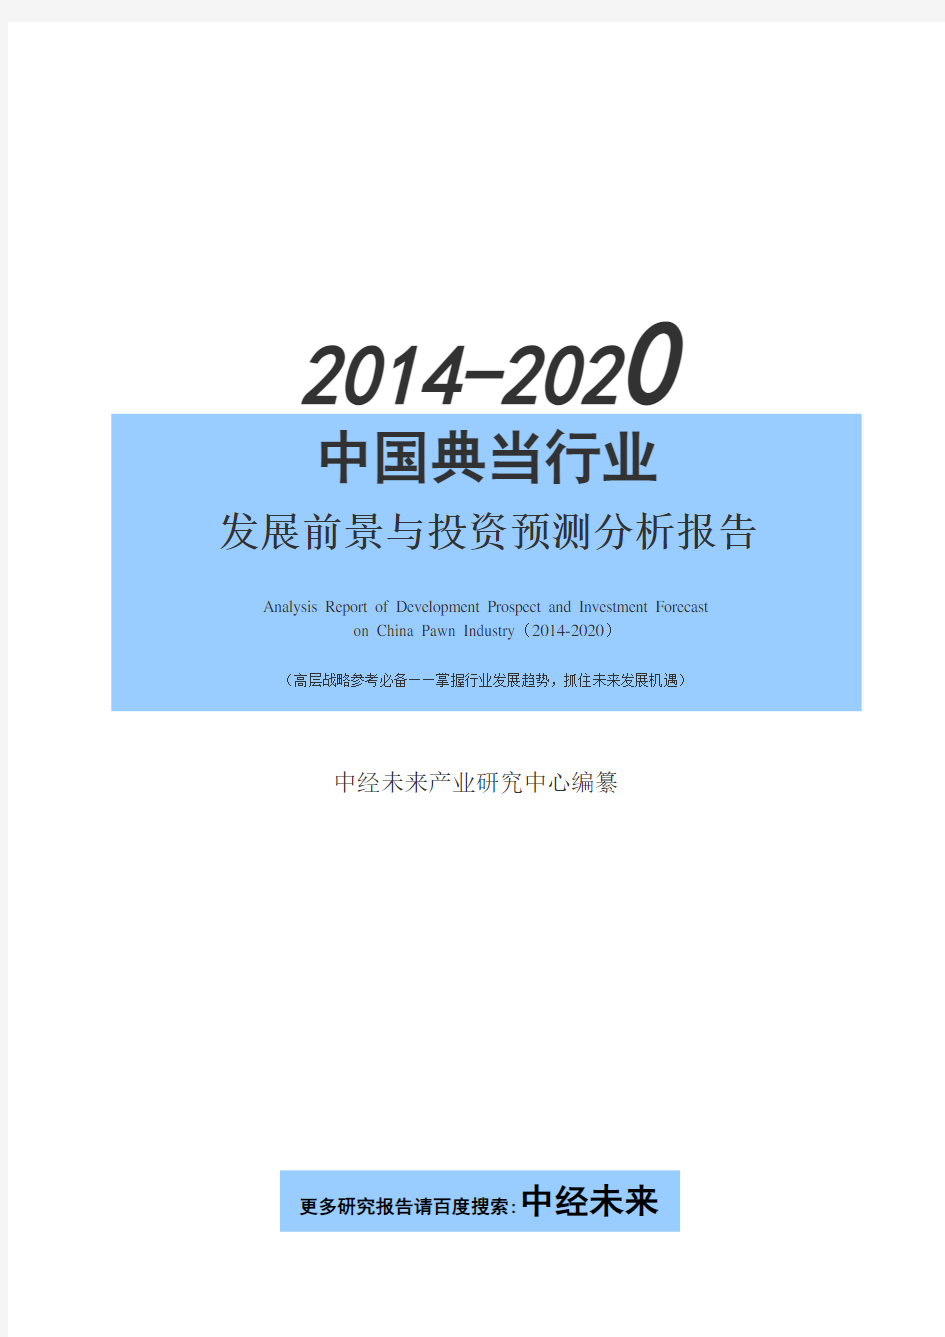 2014-2020年中国典当行业发展前景与投资预测分析报告【中经未来版】